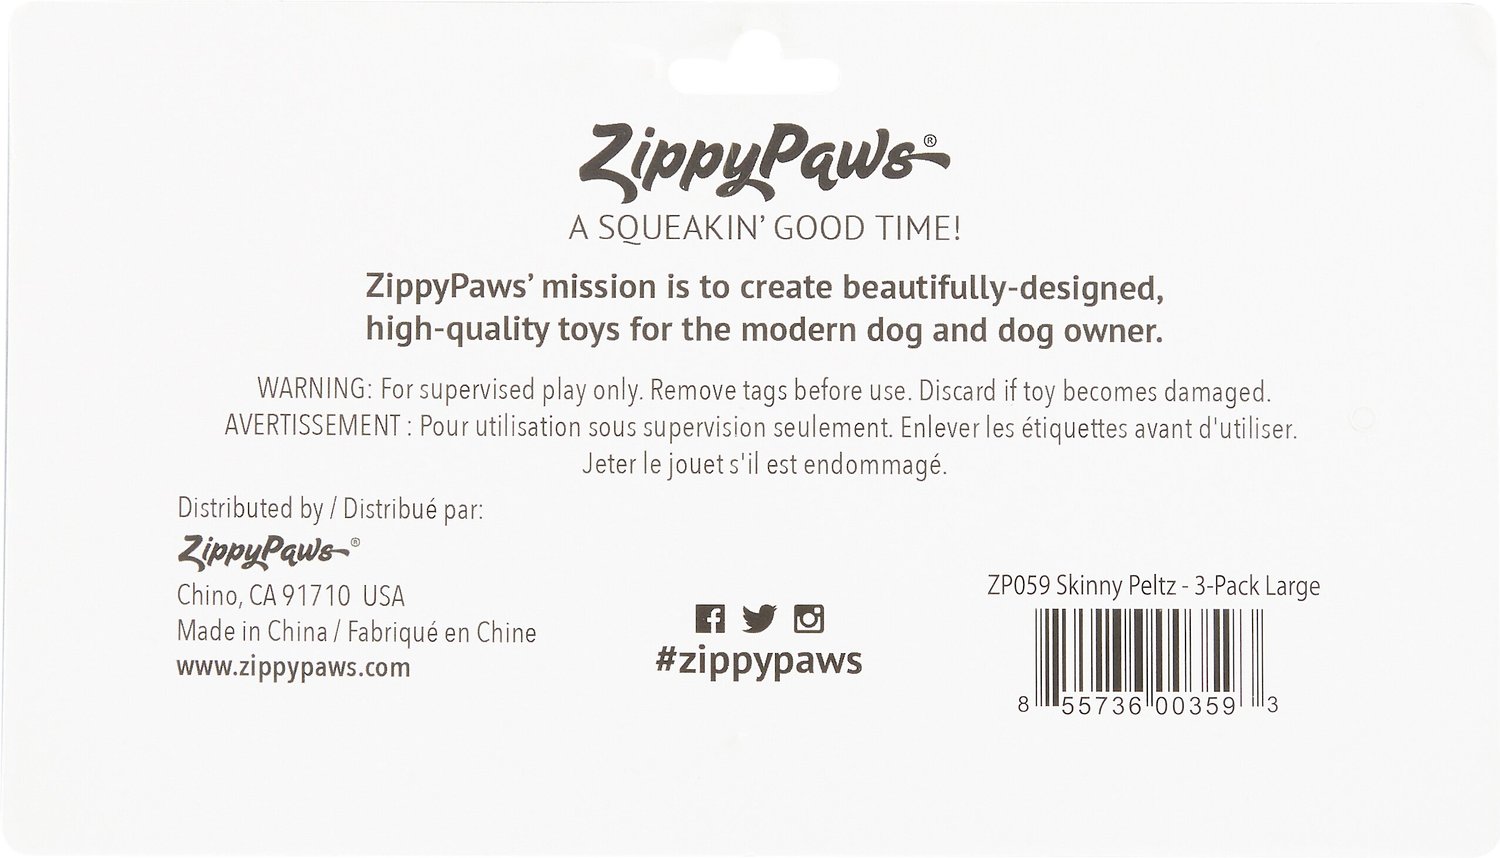 zippypaws skinny peltz no stuffing squeaky plush dog toys